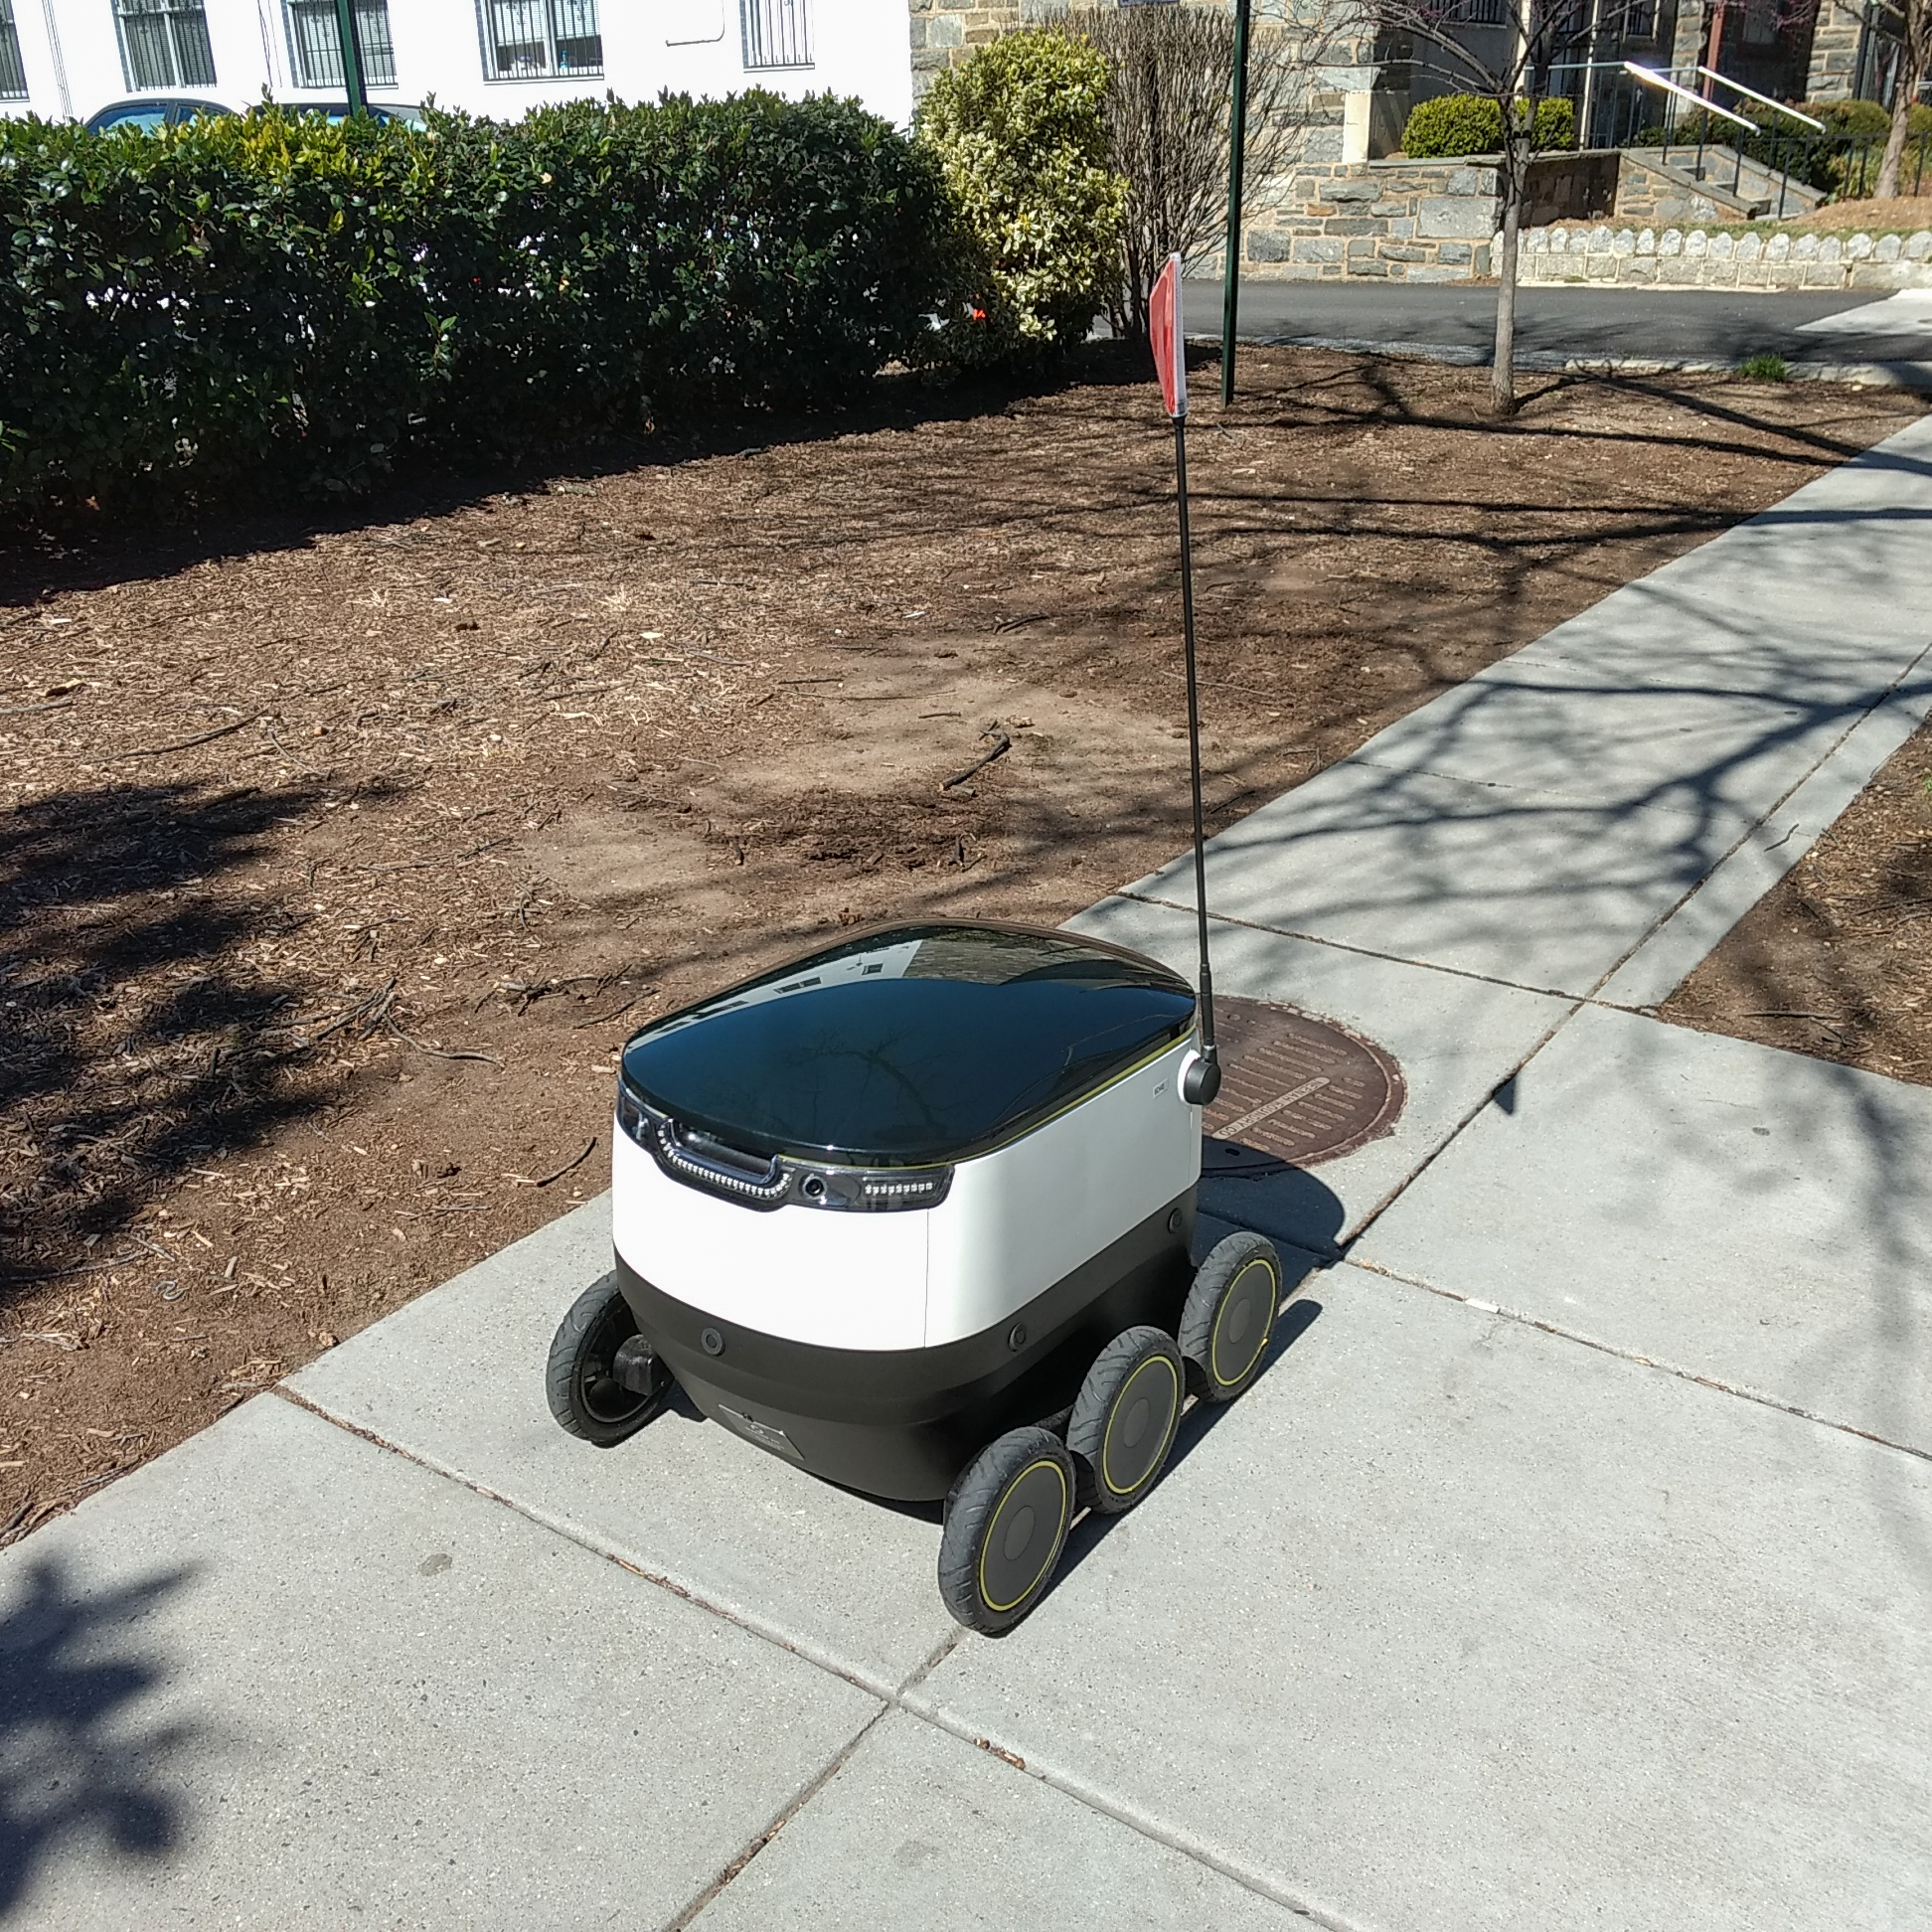 San Francisco járókelői annyira rühellik az ételfutár robotokat, hogy rendszeresen megrugdossák őket